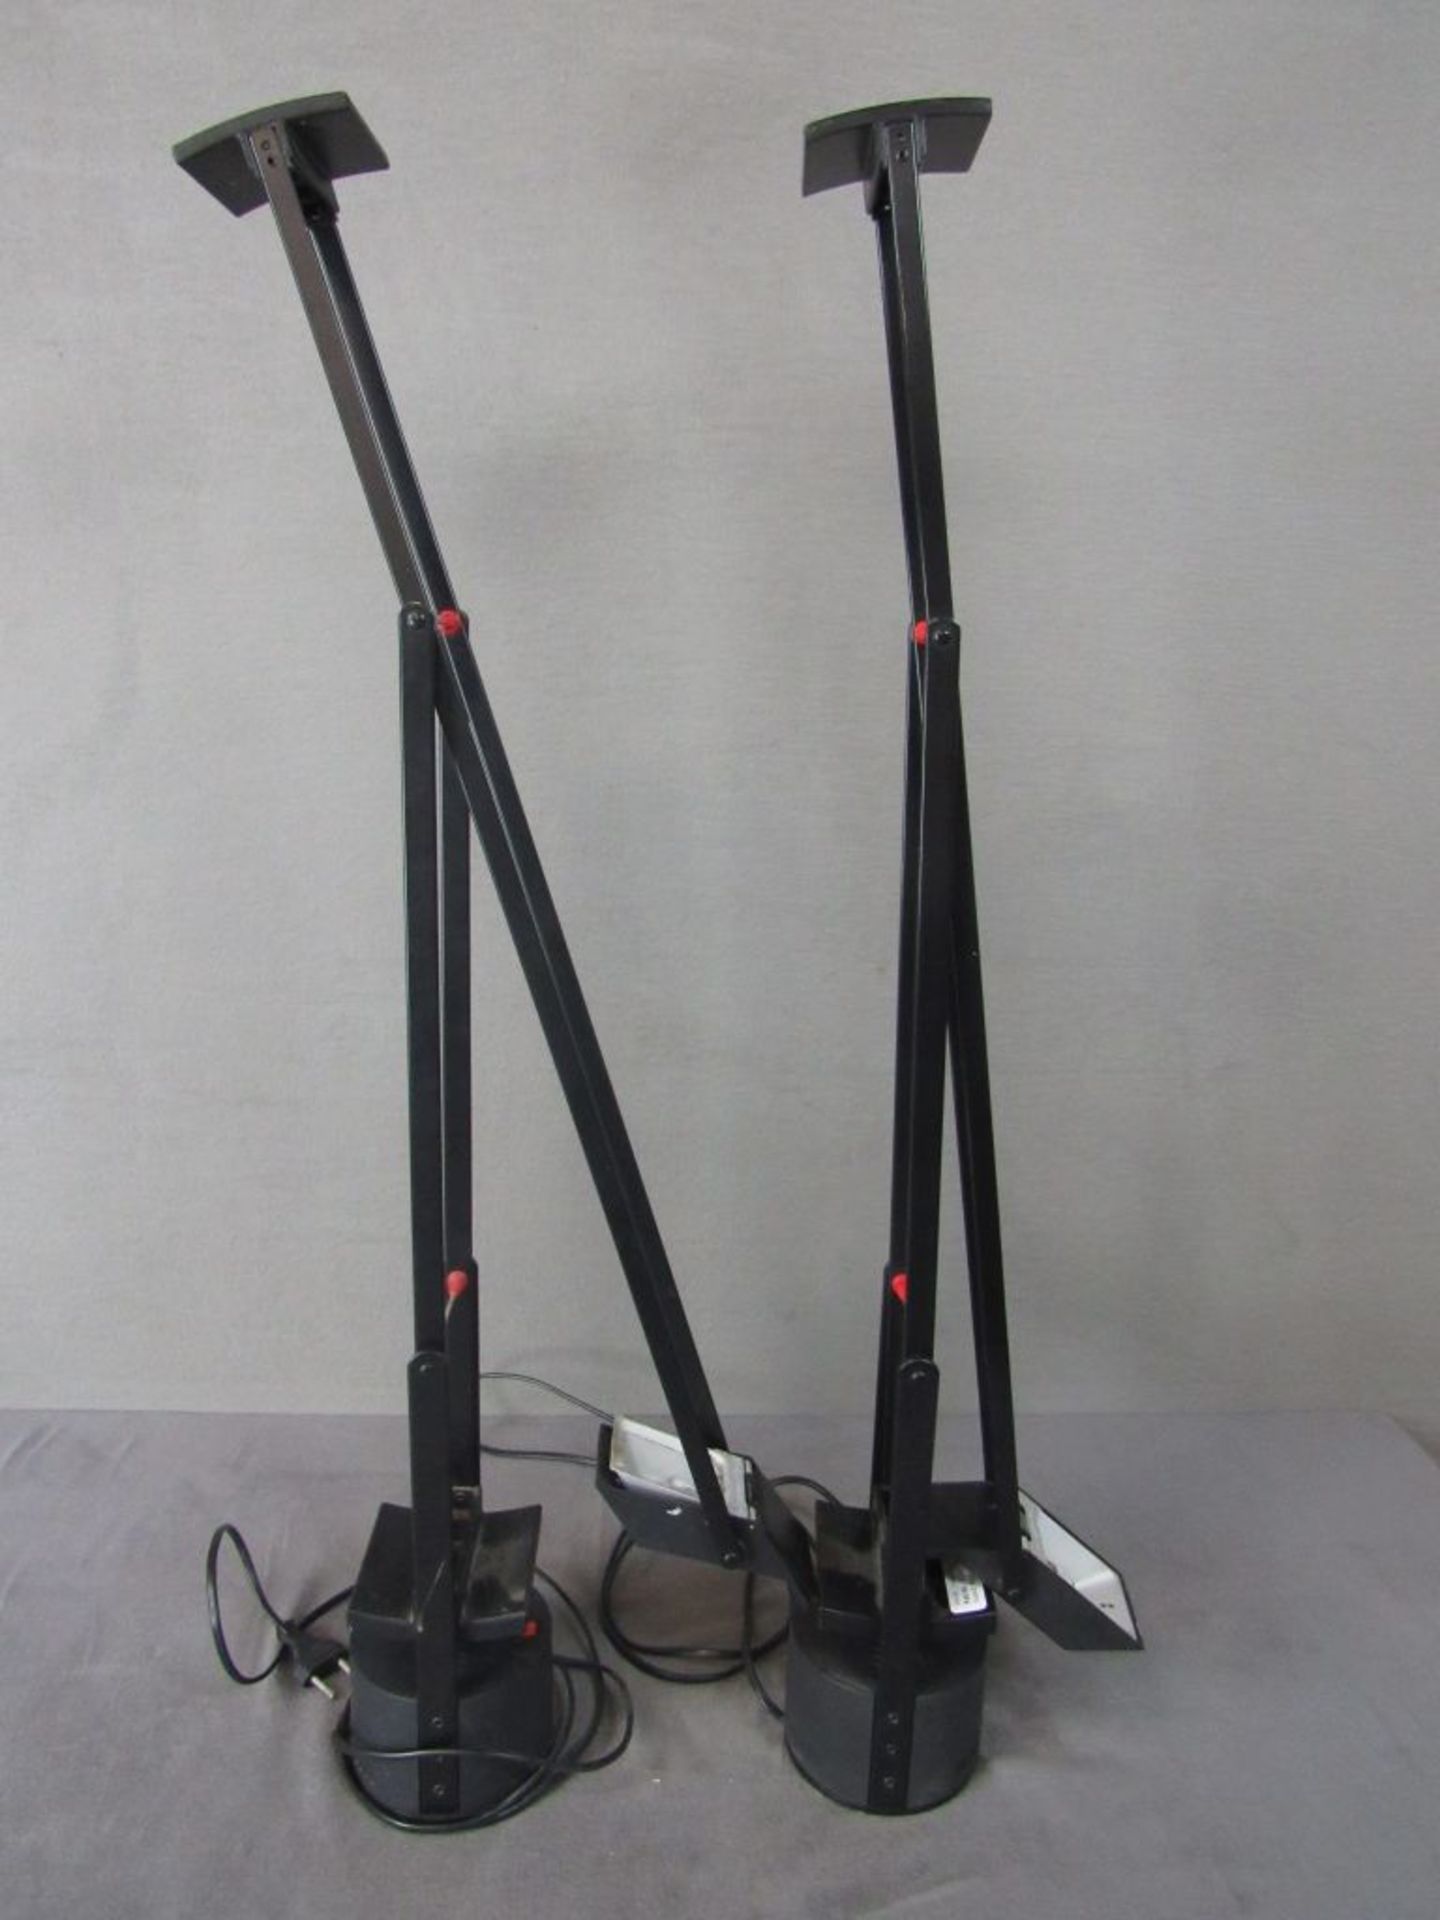 Zwei Designertischlampen Schreibtischlampen Arte Mide Milano Made in Italy Design Sapper mehrfach - Bild 8 aus 8